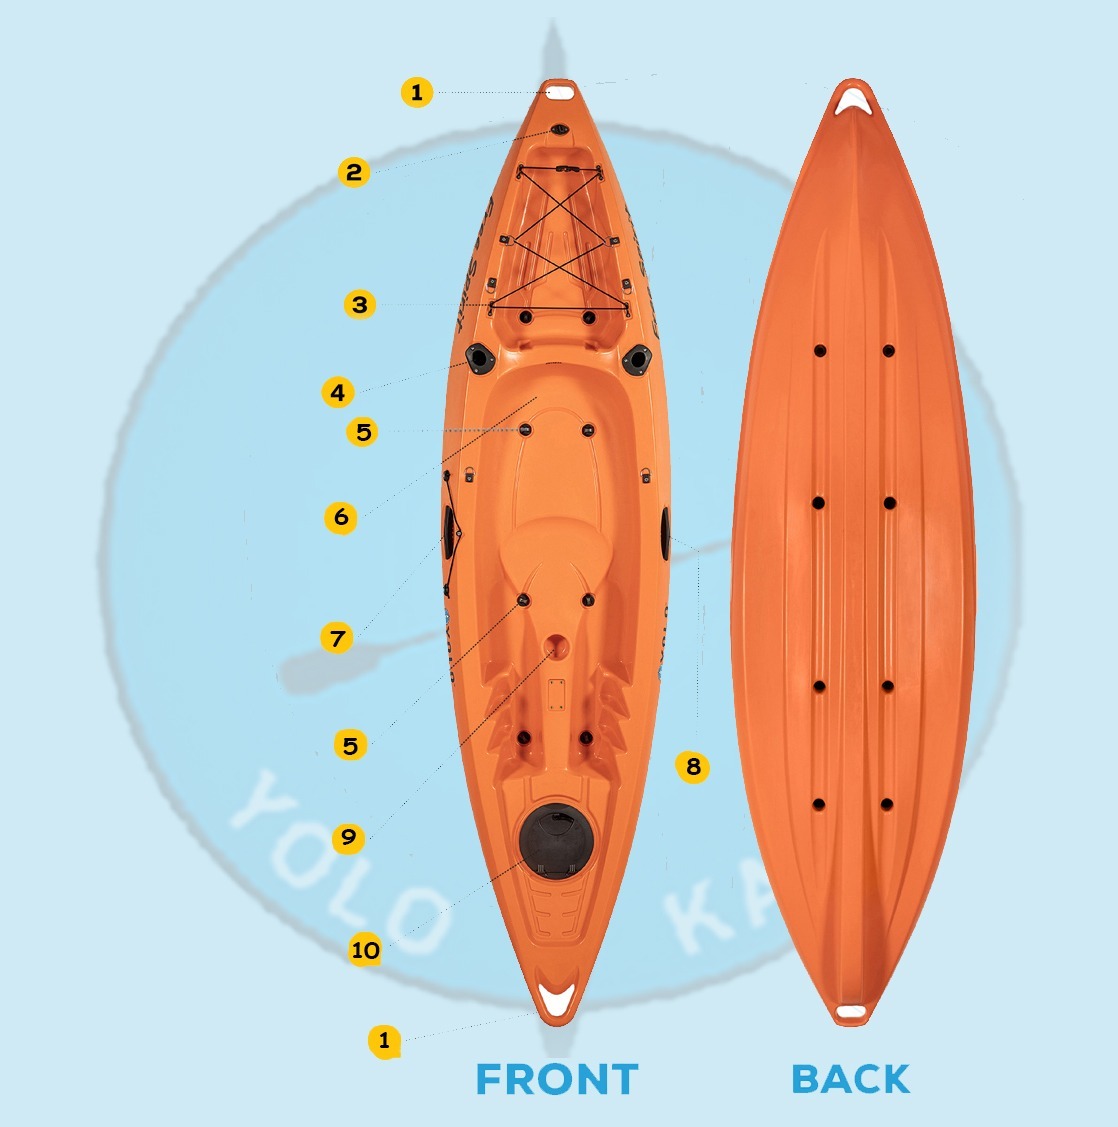 FREE SPIRIT Kayaks Manufactures